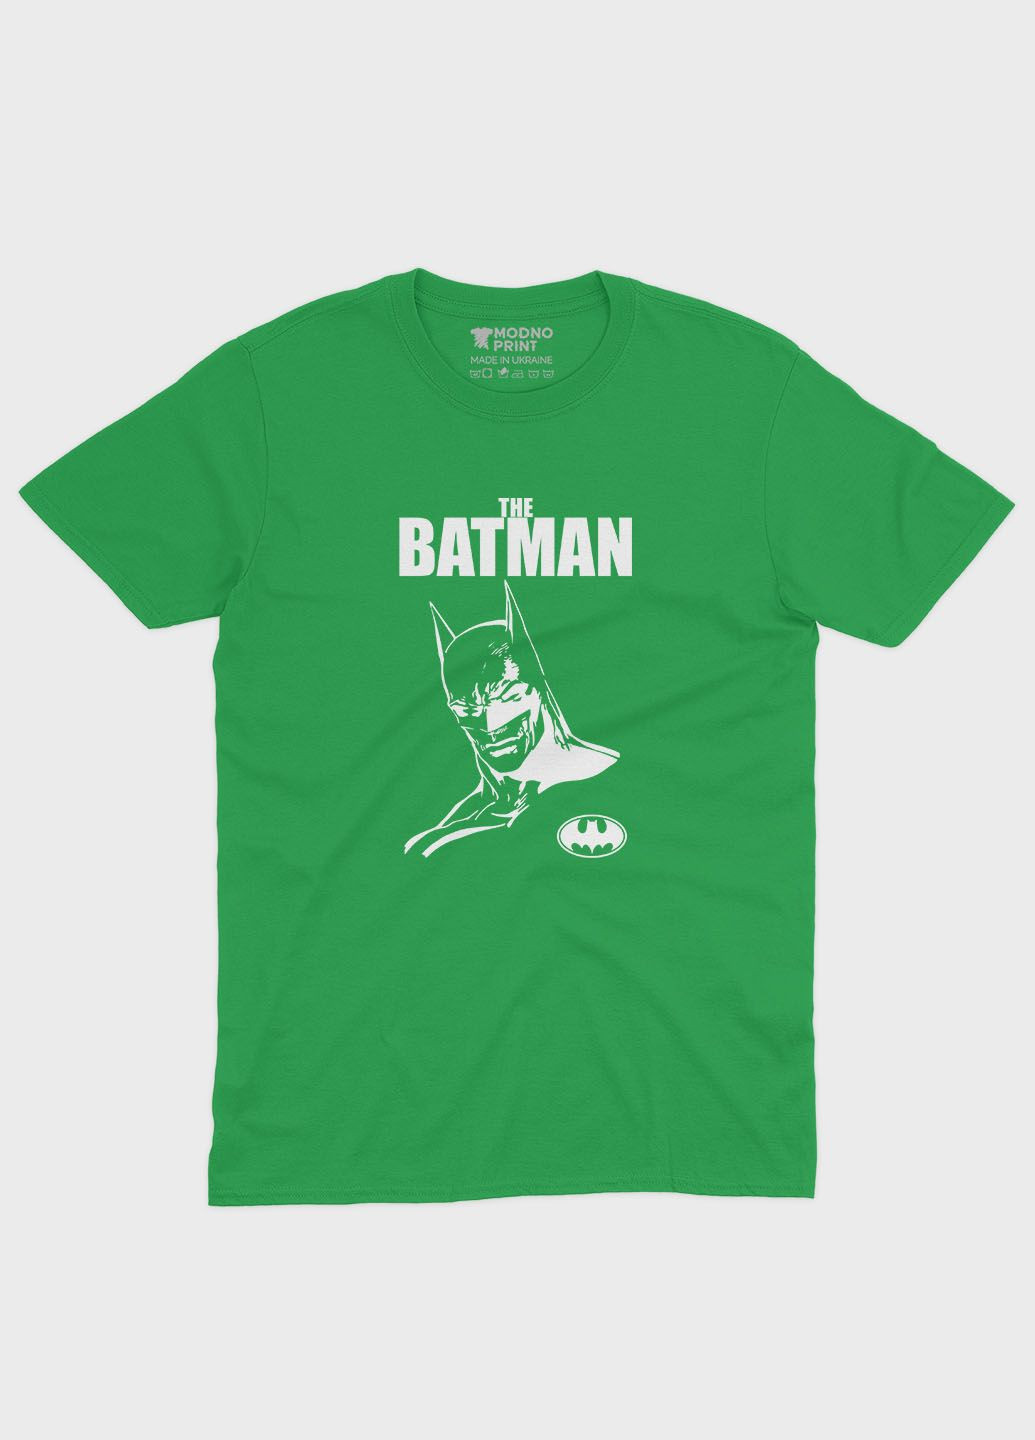 Зелена демісезонна футболка для хлопчика з принтом супергероя - бетмен (ts001-1-keg-006-003-009-b) Modno